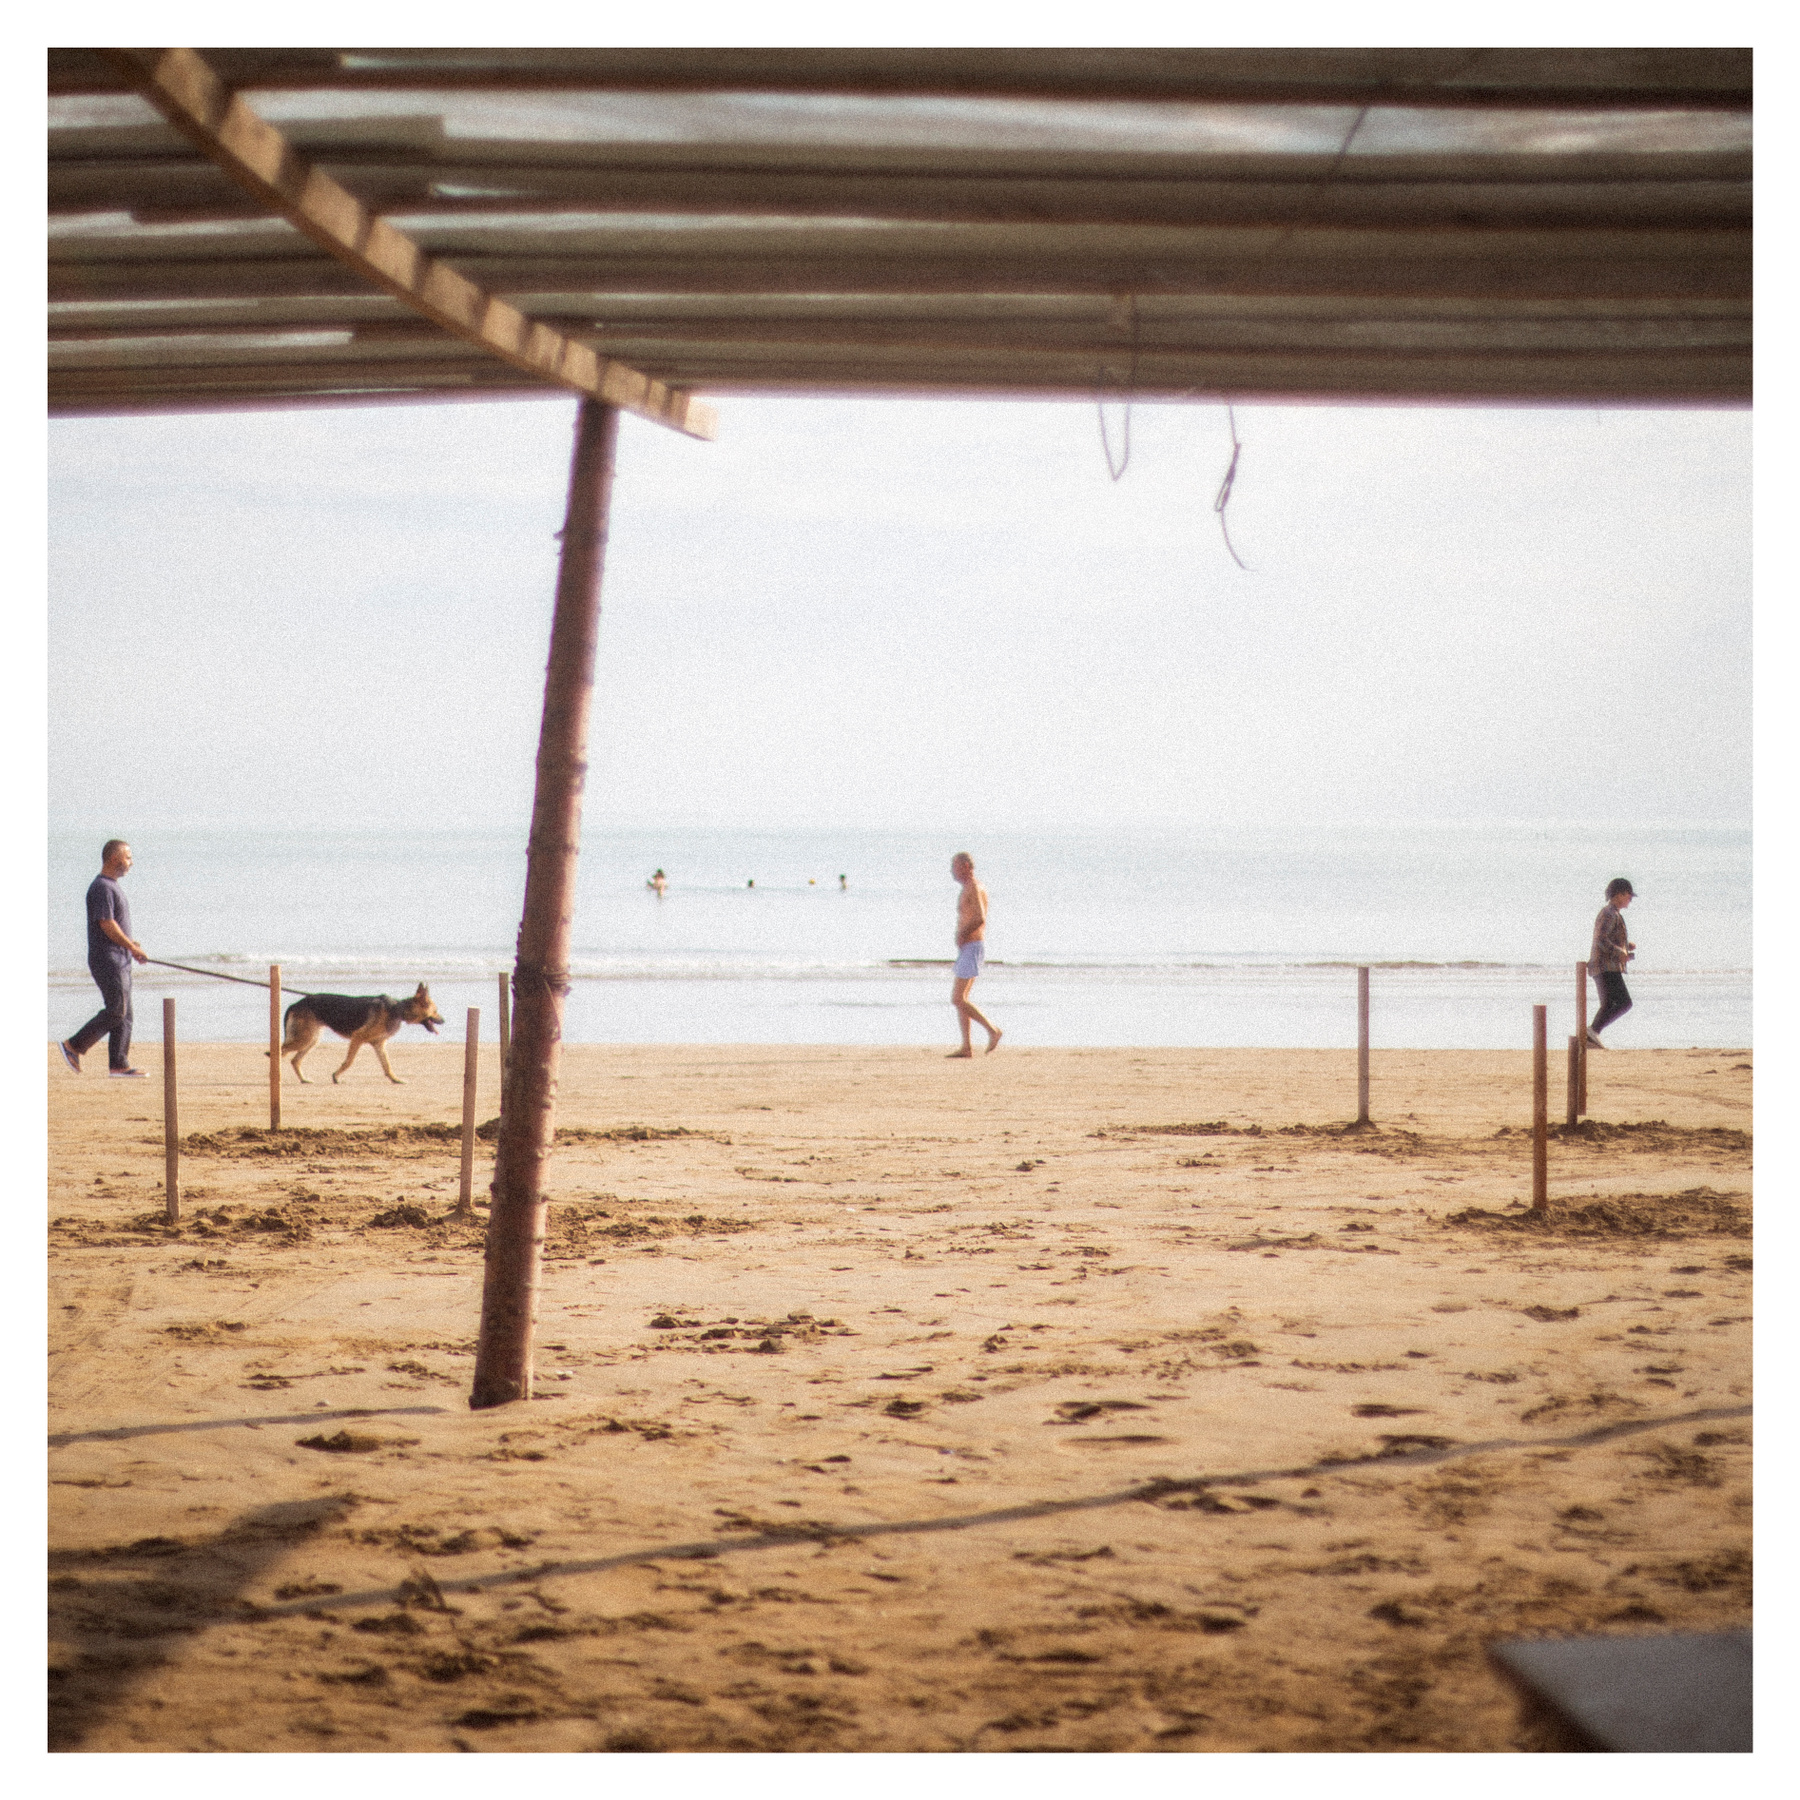 Бег трусцой пейзаж бег собака море пляж люди женщина мужчина спорт песок загар воздух отдых